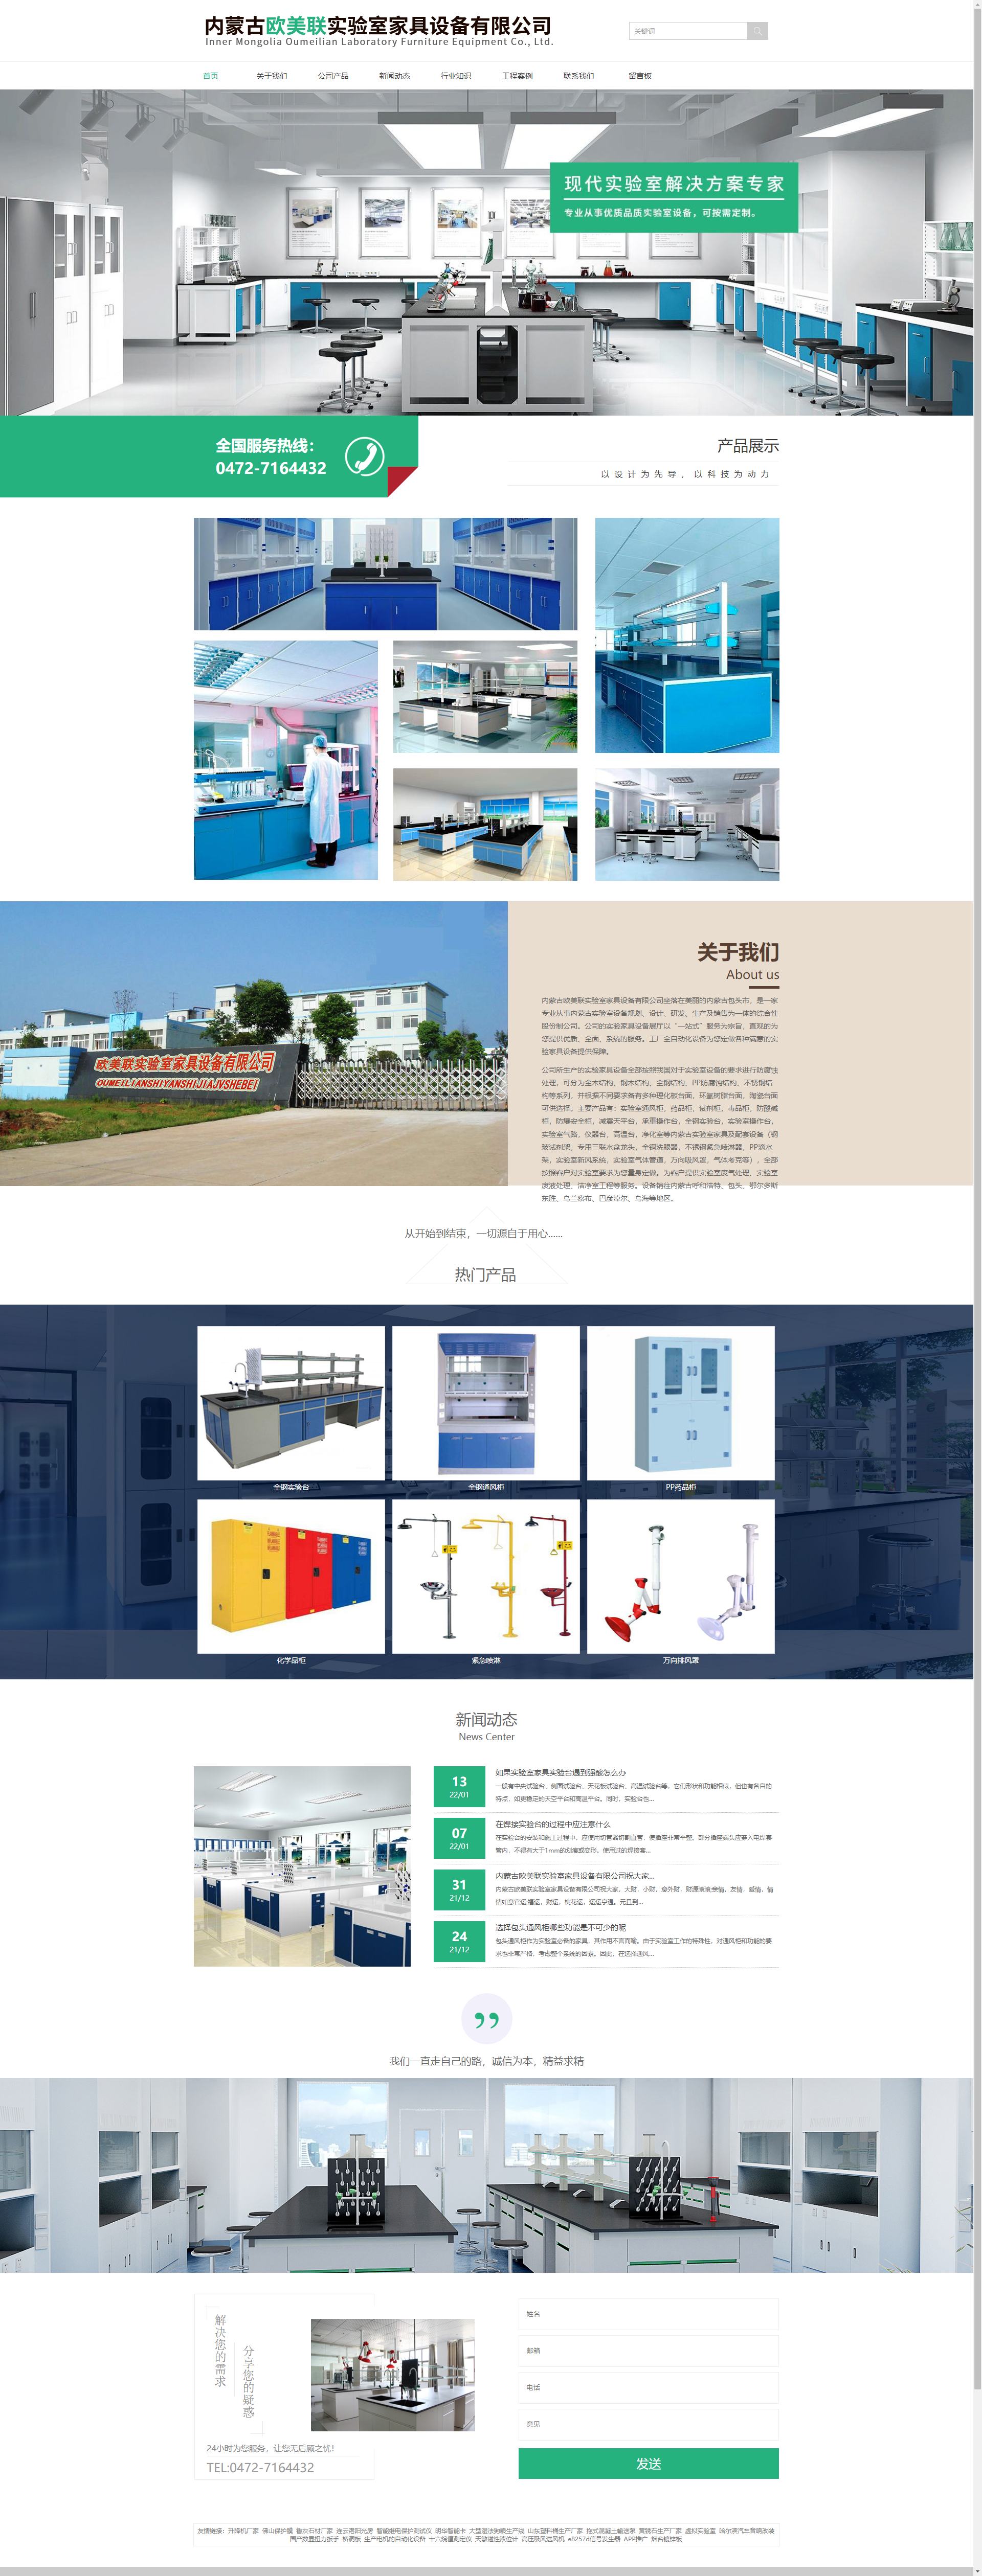 内蒙古欧美联实验室家具设备有限公司网站案例